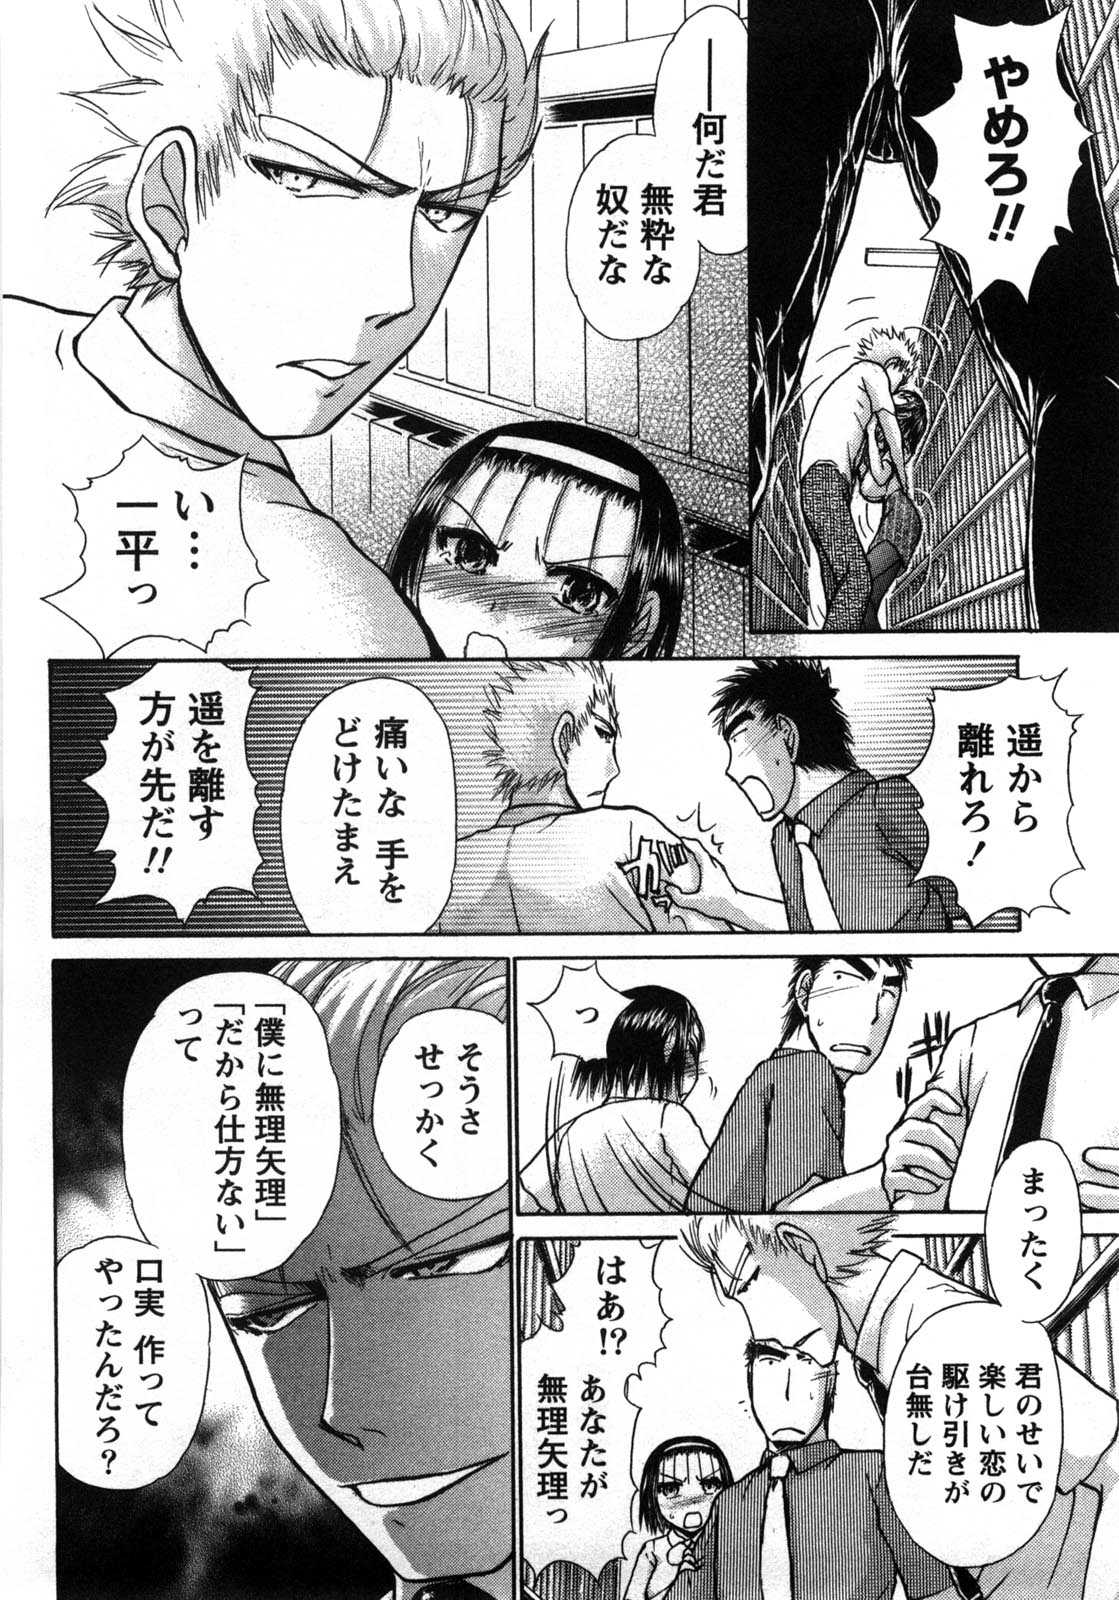 [Ayasaka Mitsune] Compass ~Ojousama to Namegoto wo~ Vol.1 [綾坂みつね] コンパス ~お嬢様と舐めゴトを♥~ 上巻 [11-04-09]